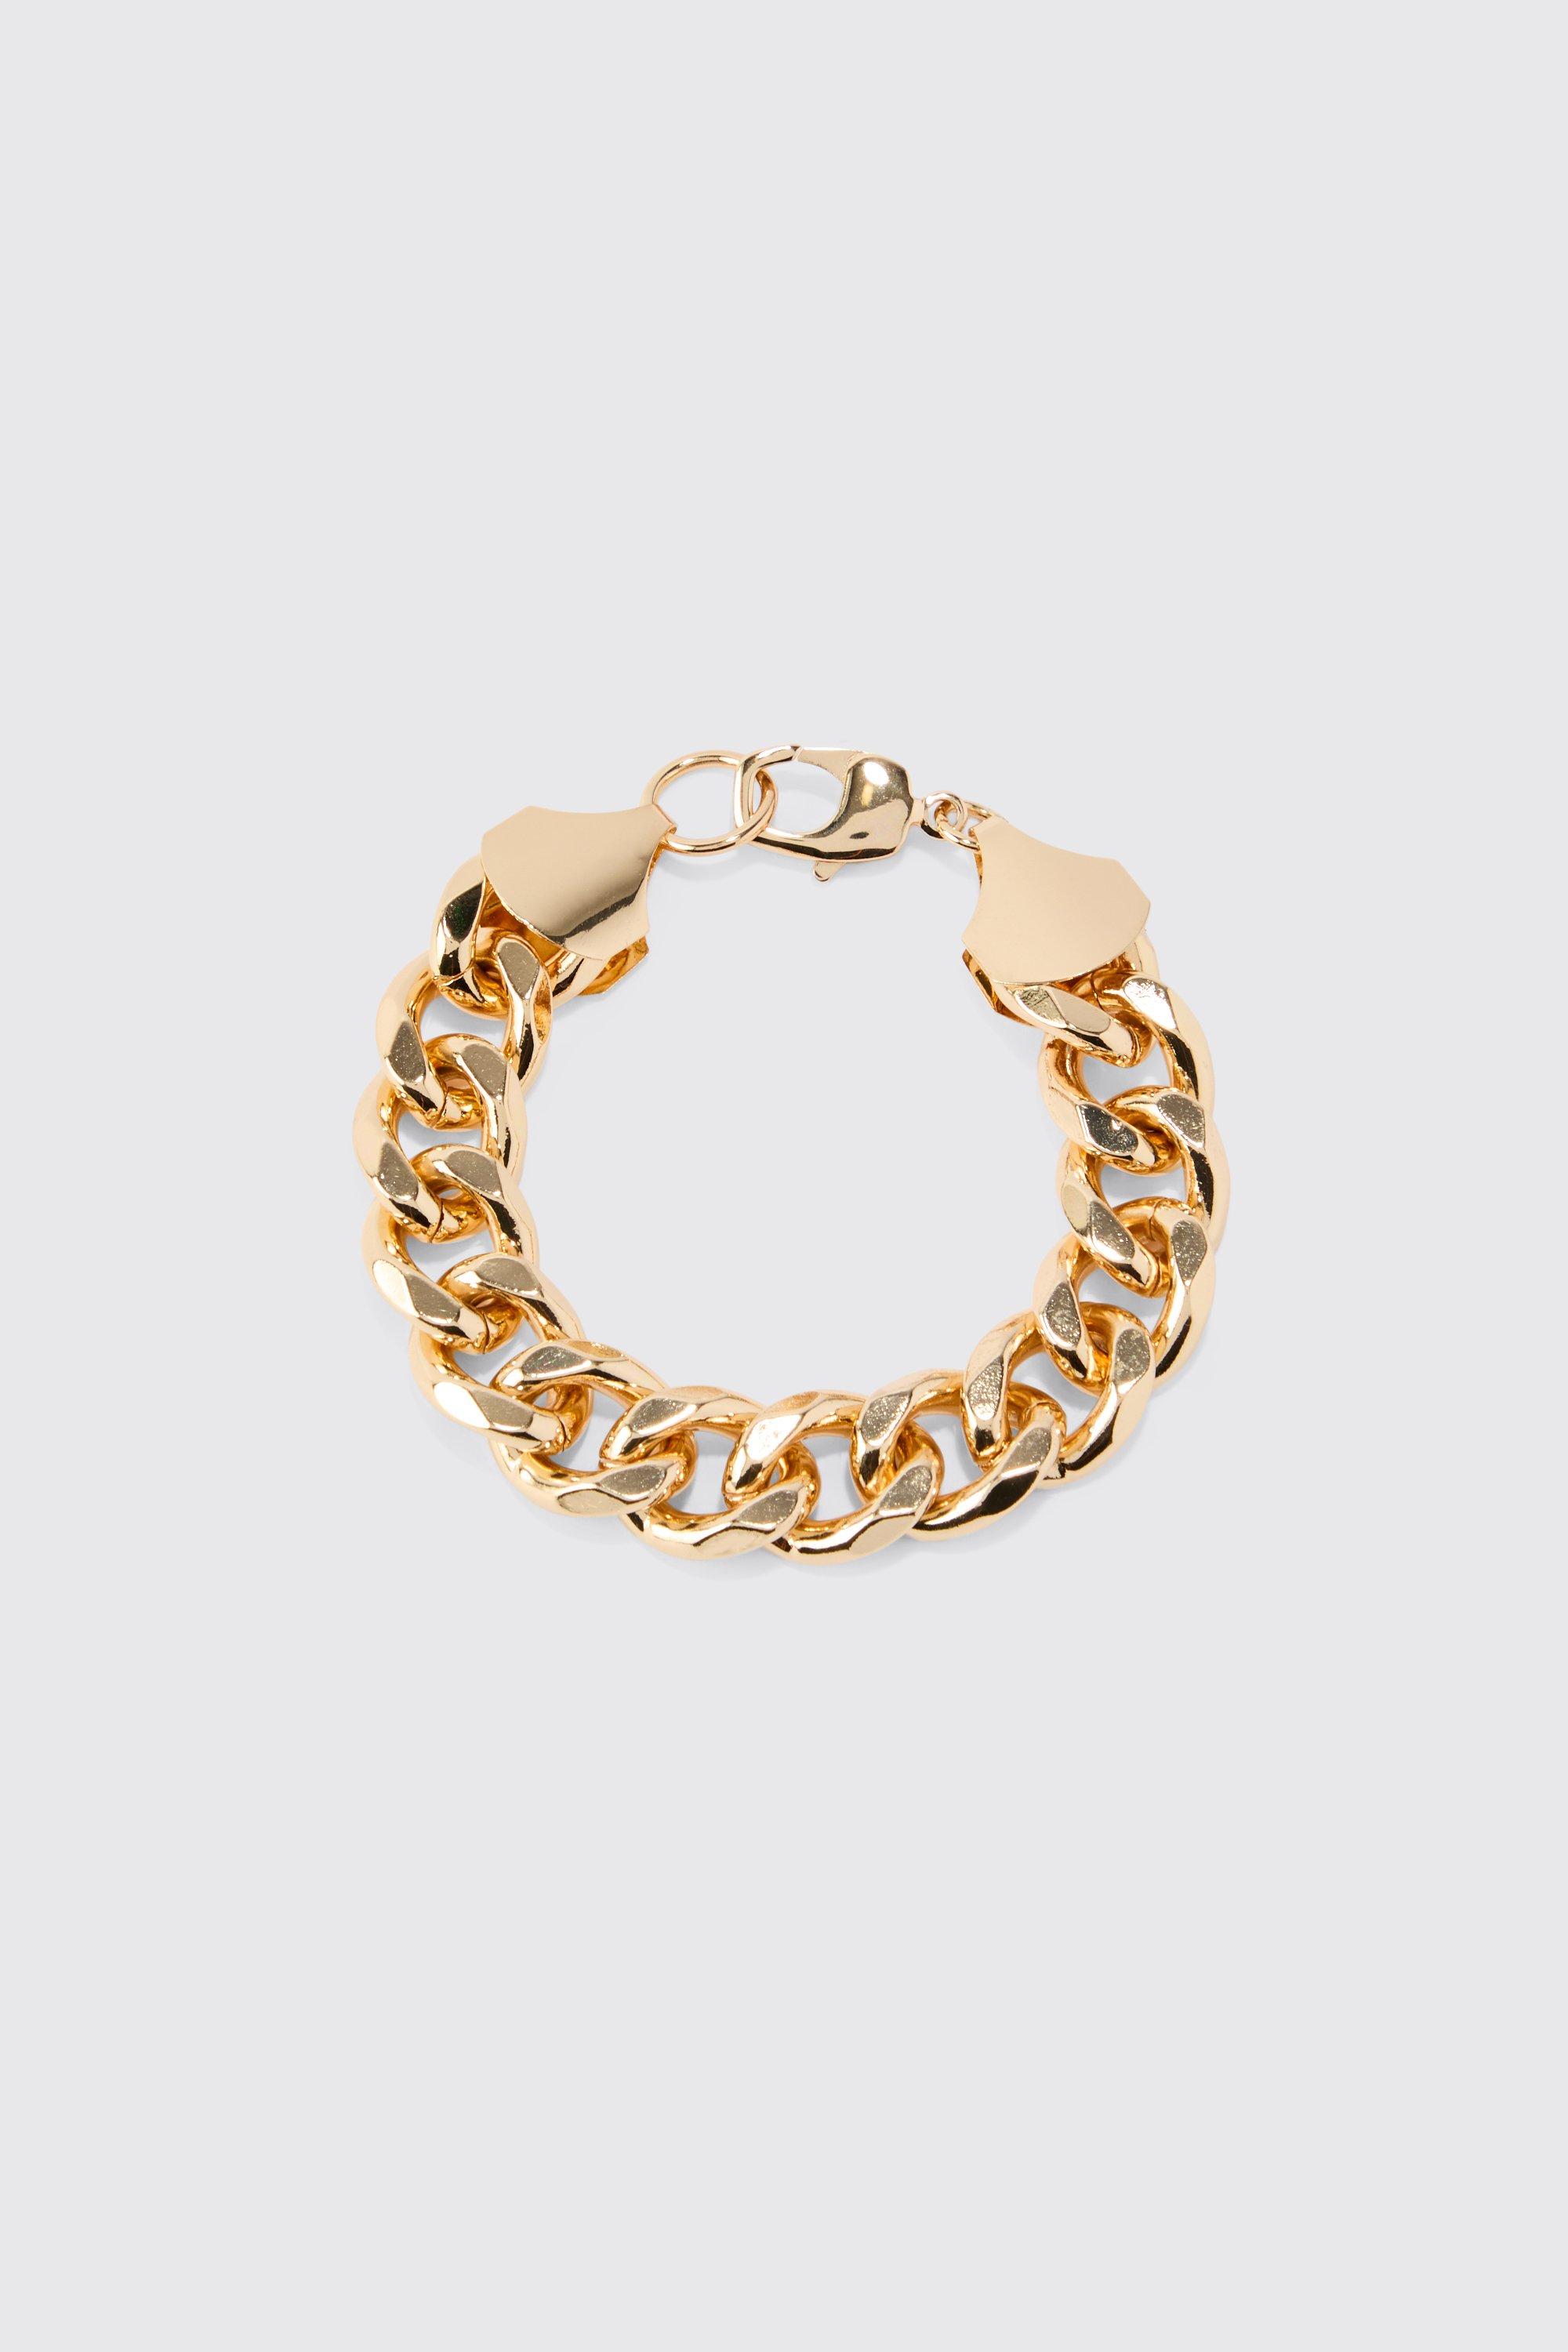 bracelet en chaîne épaisse homme - or - one size, or